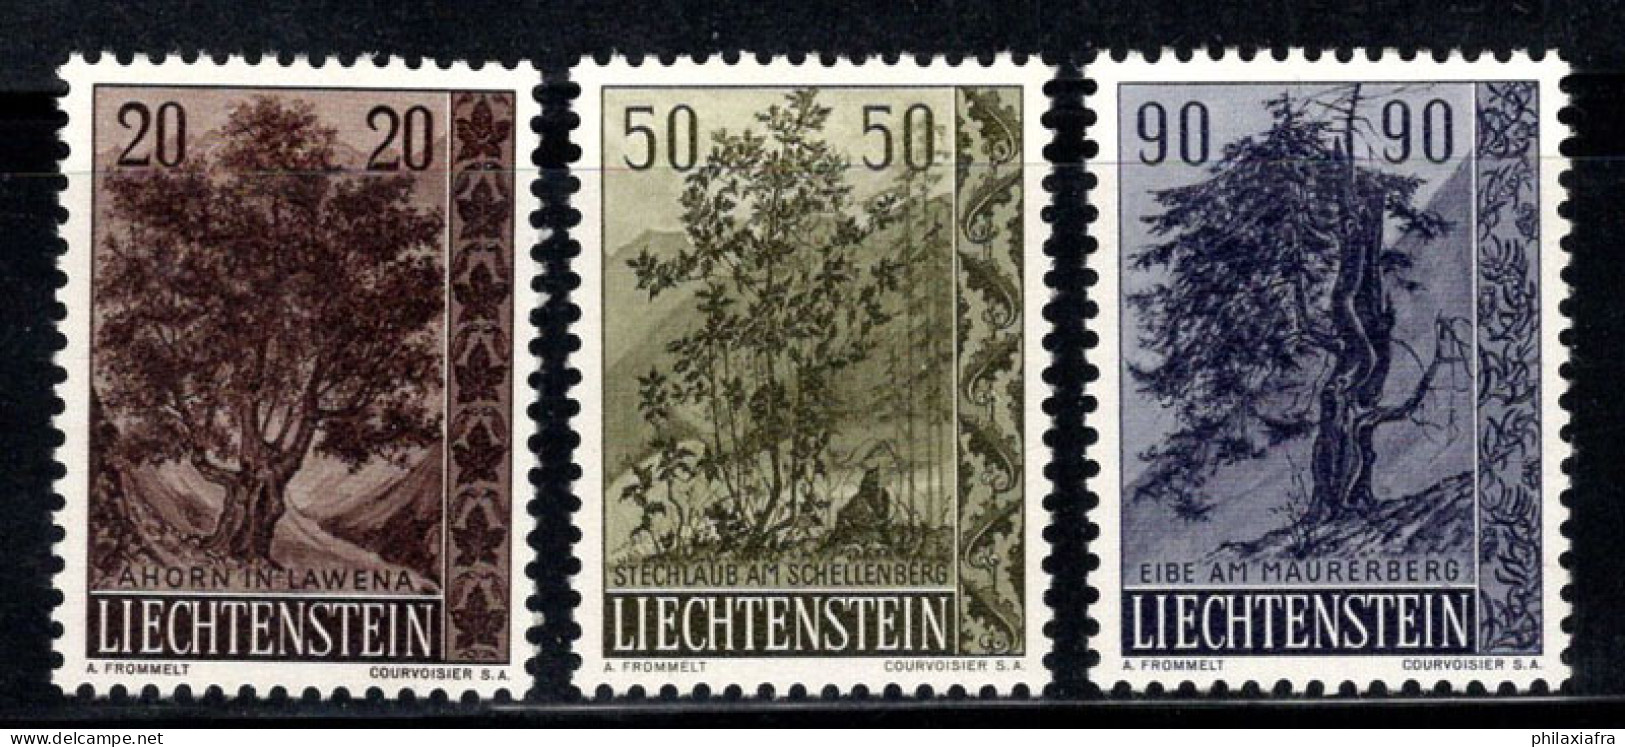 Liechtenstein 1958 Mi. 371-373 Neuf * MH 100% Arbres, Flore - Nuovi